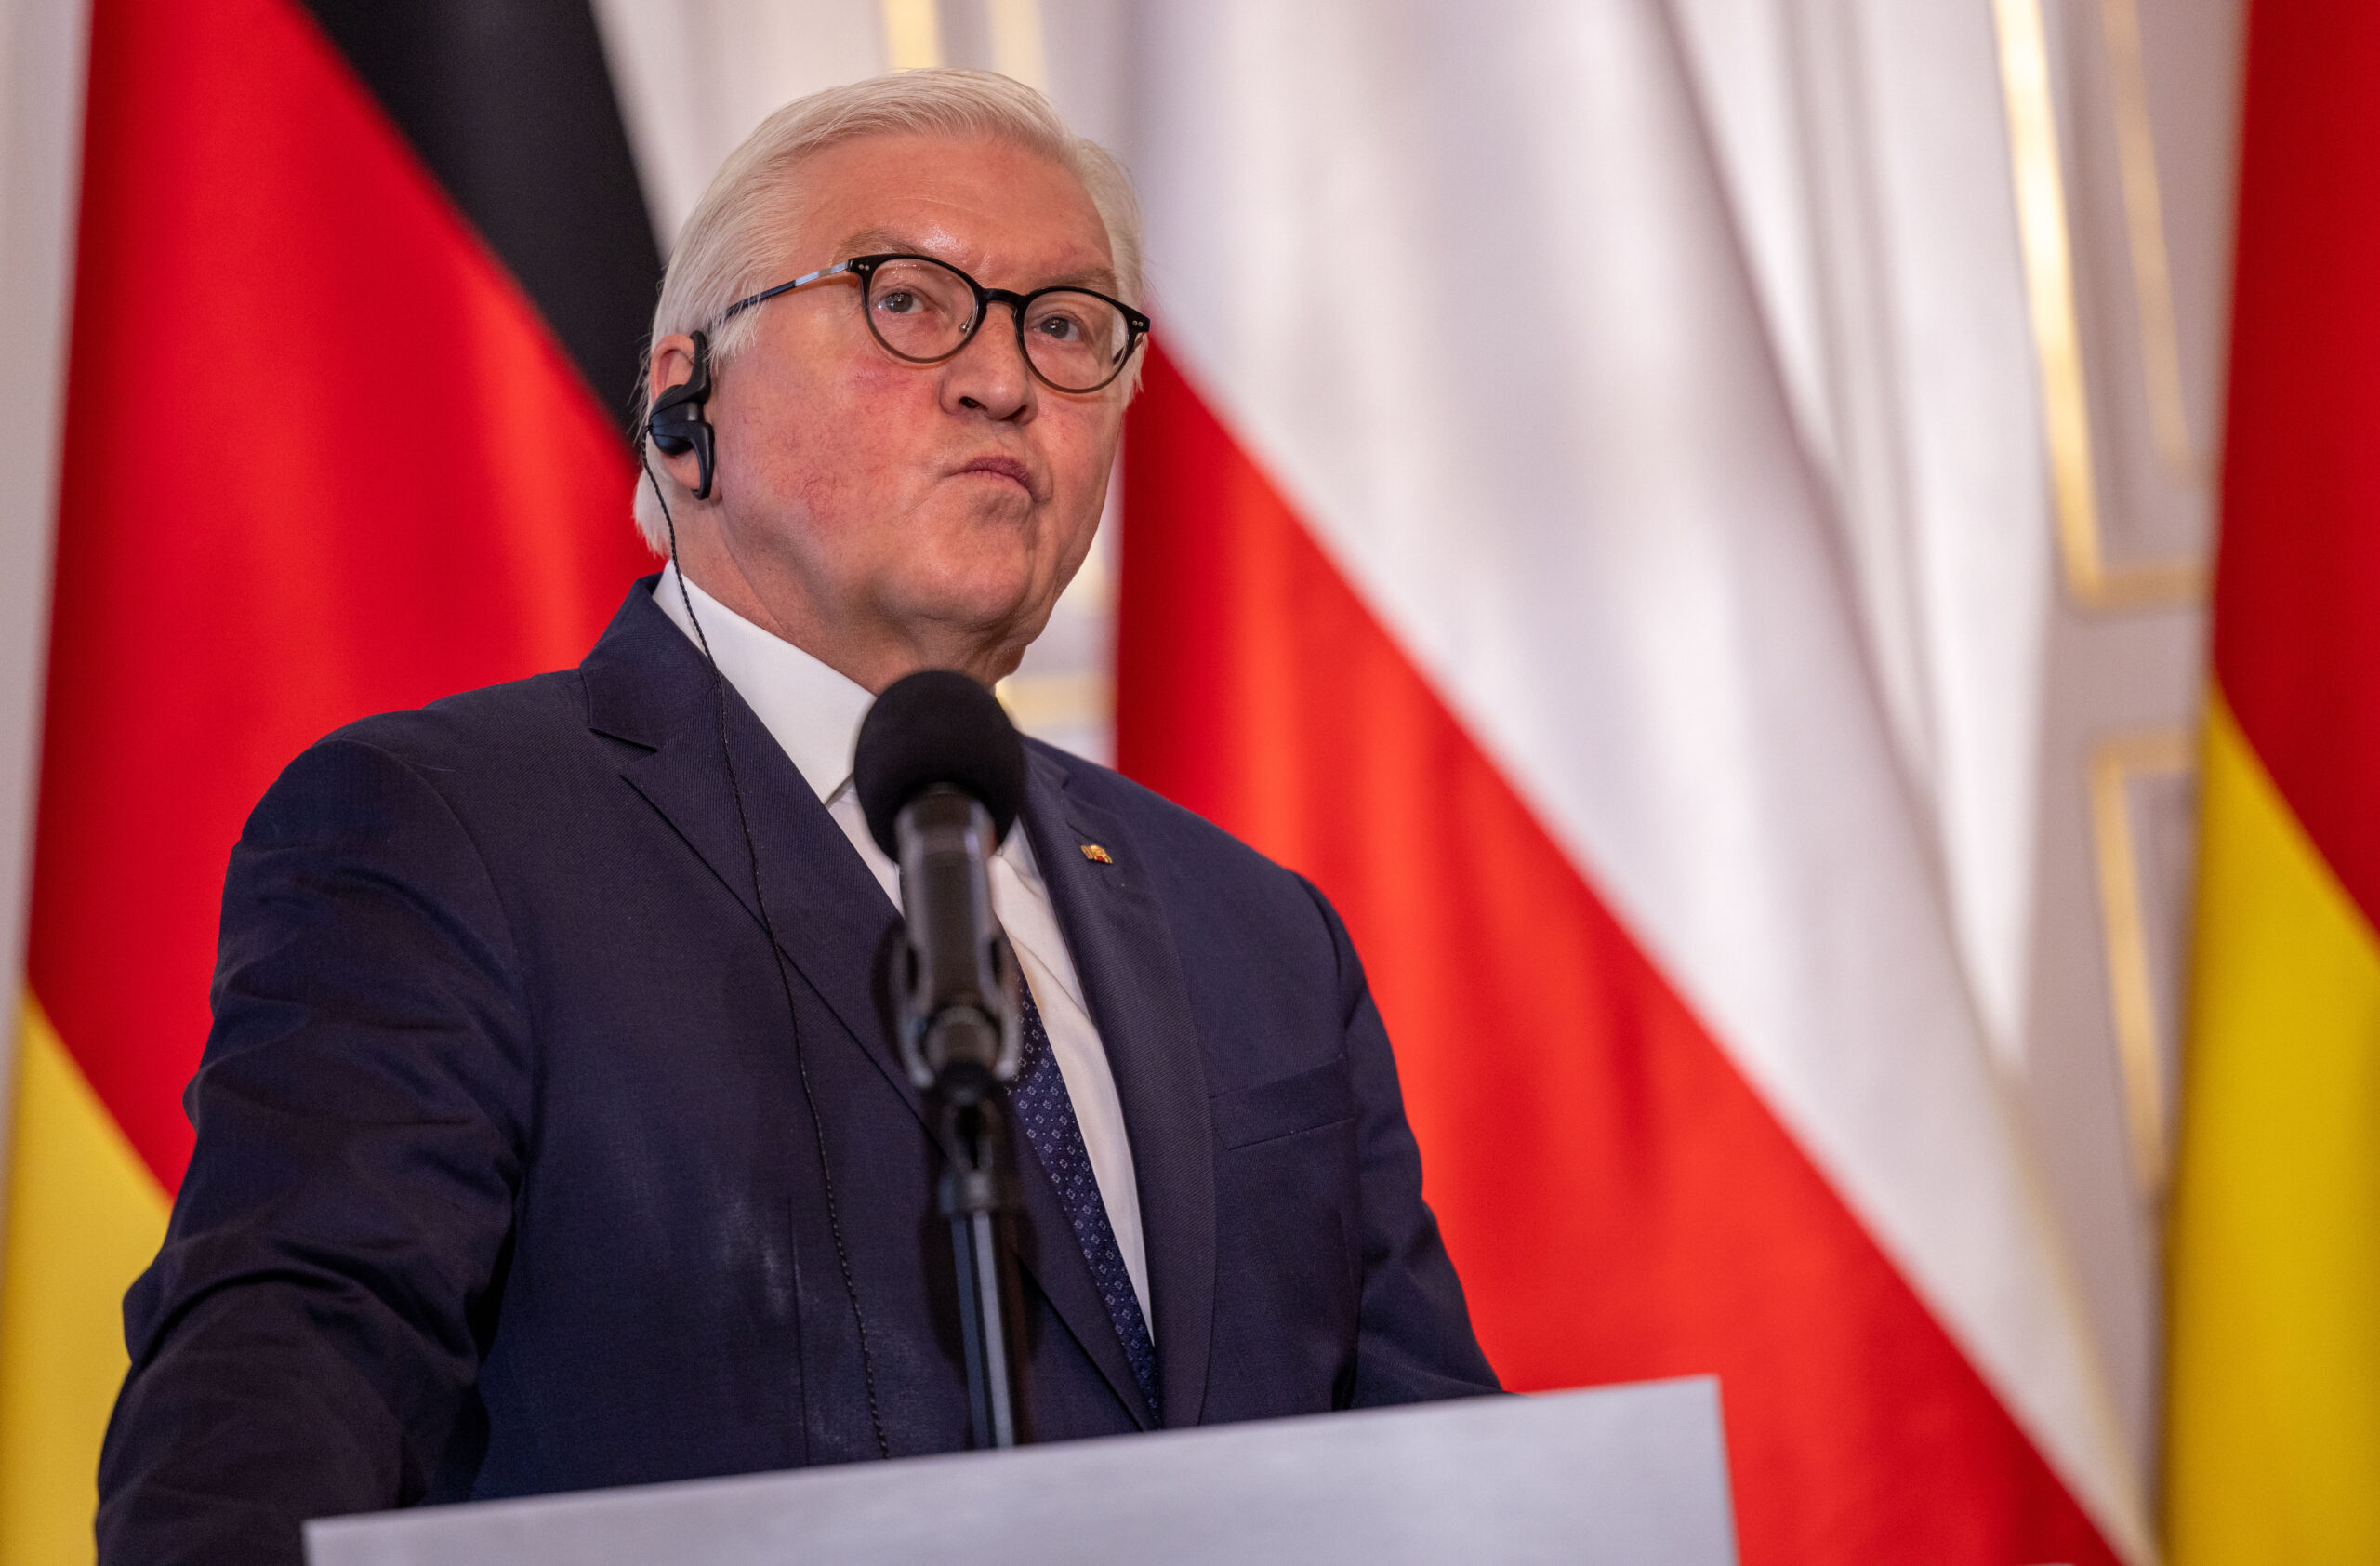 Bundesprsident Frank-Walter Steinmeier beantwortet bei einer Pressekonferenz mit dem polnischen Präsidenten die Fragen von Medienvertretern.